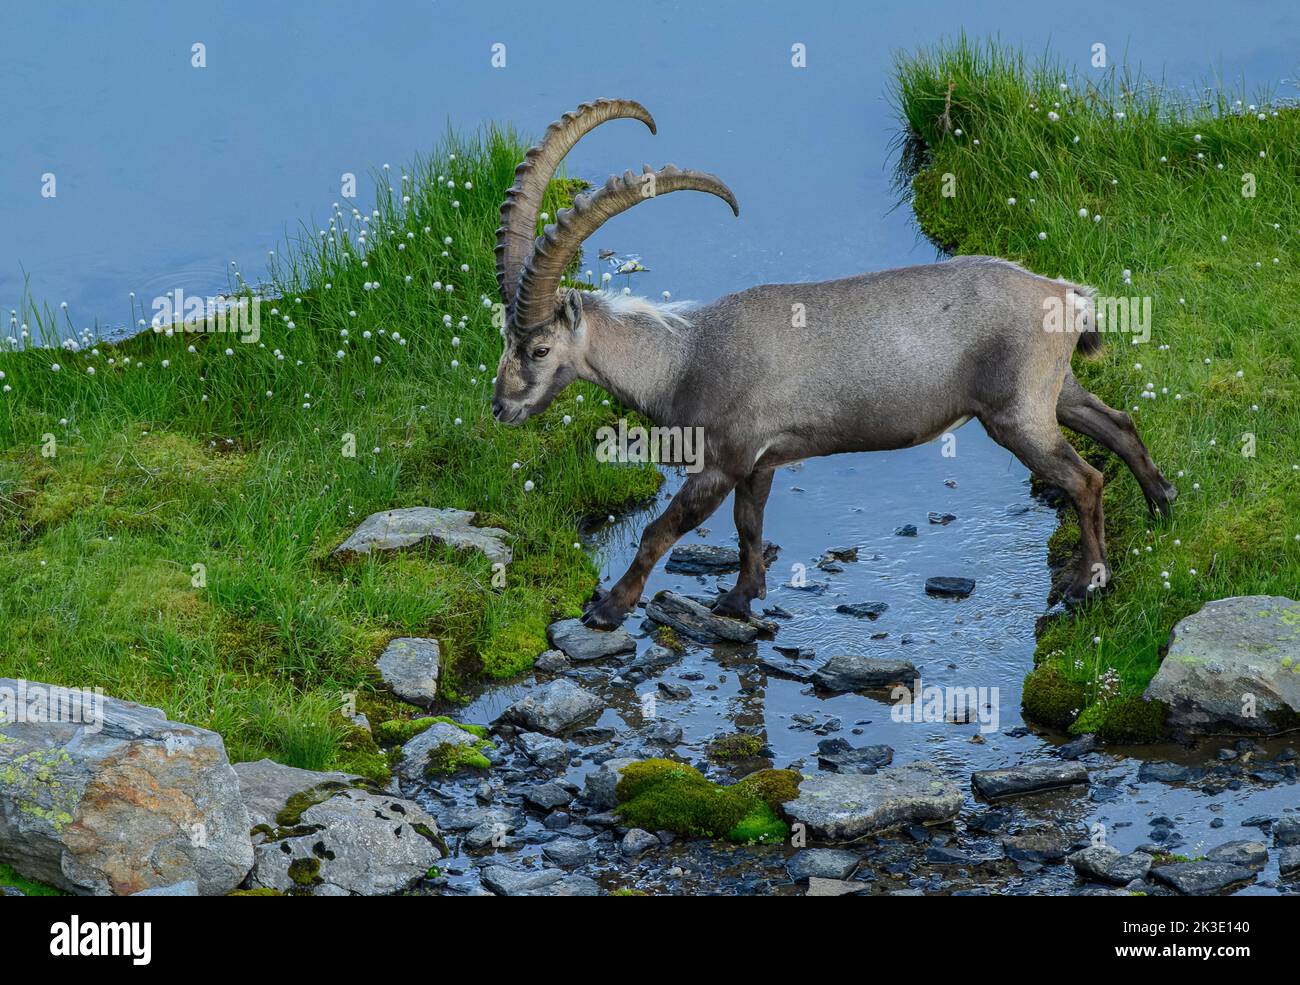 L'ancien ibex alpin mâle, Capra ibex, cosinus un canal au bord du lac dans un pâturage de boghguy alpin élevé en soirée. Alpes suisses. Banque D'Images